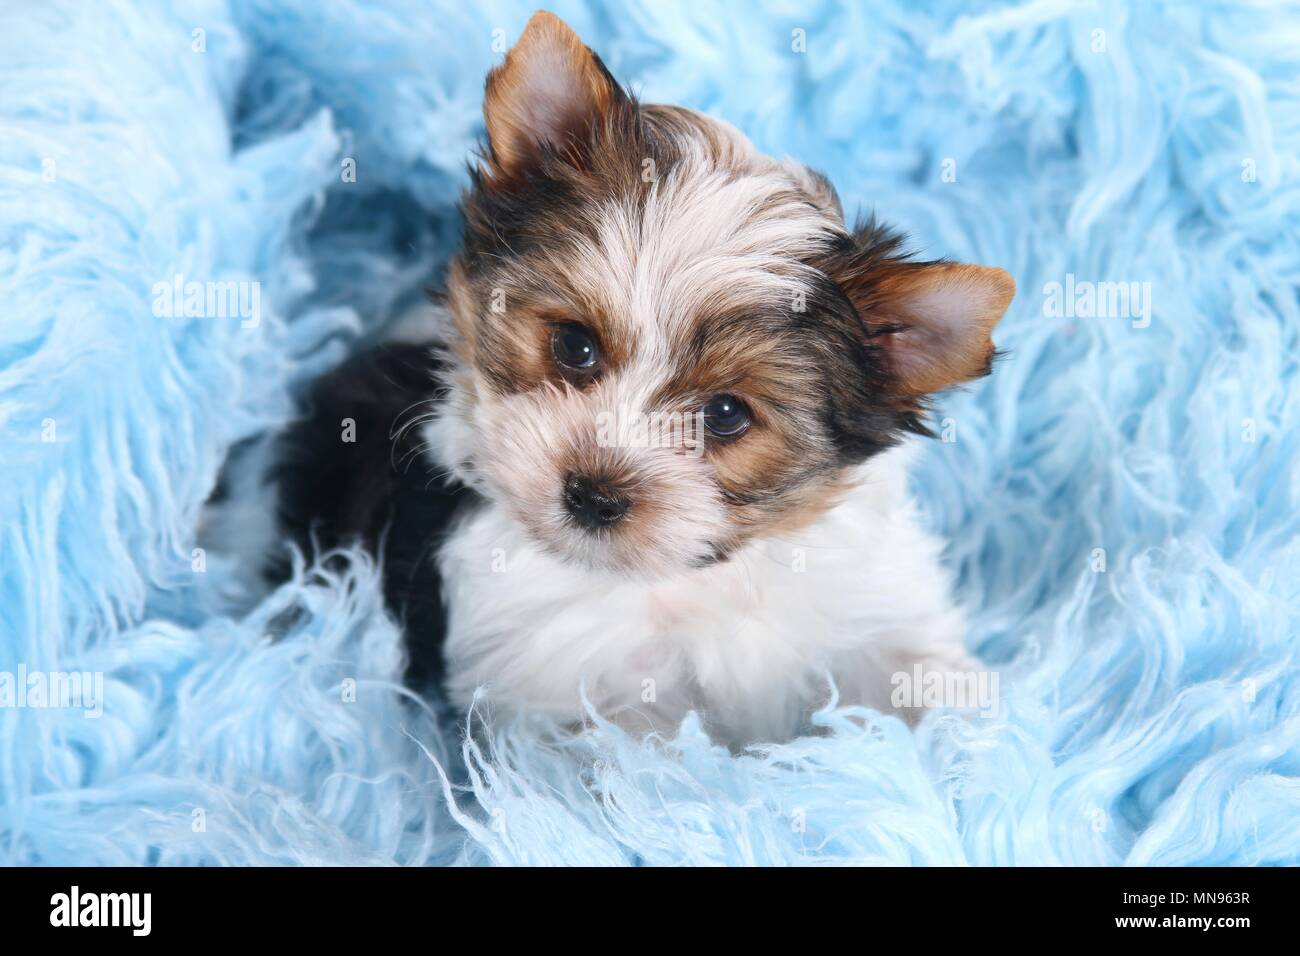 Biewer Terrier Puppy Stock Photo - Alamy